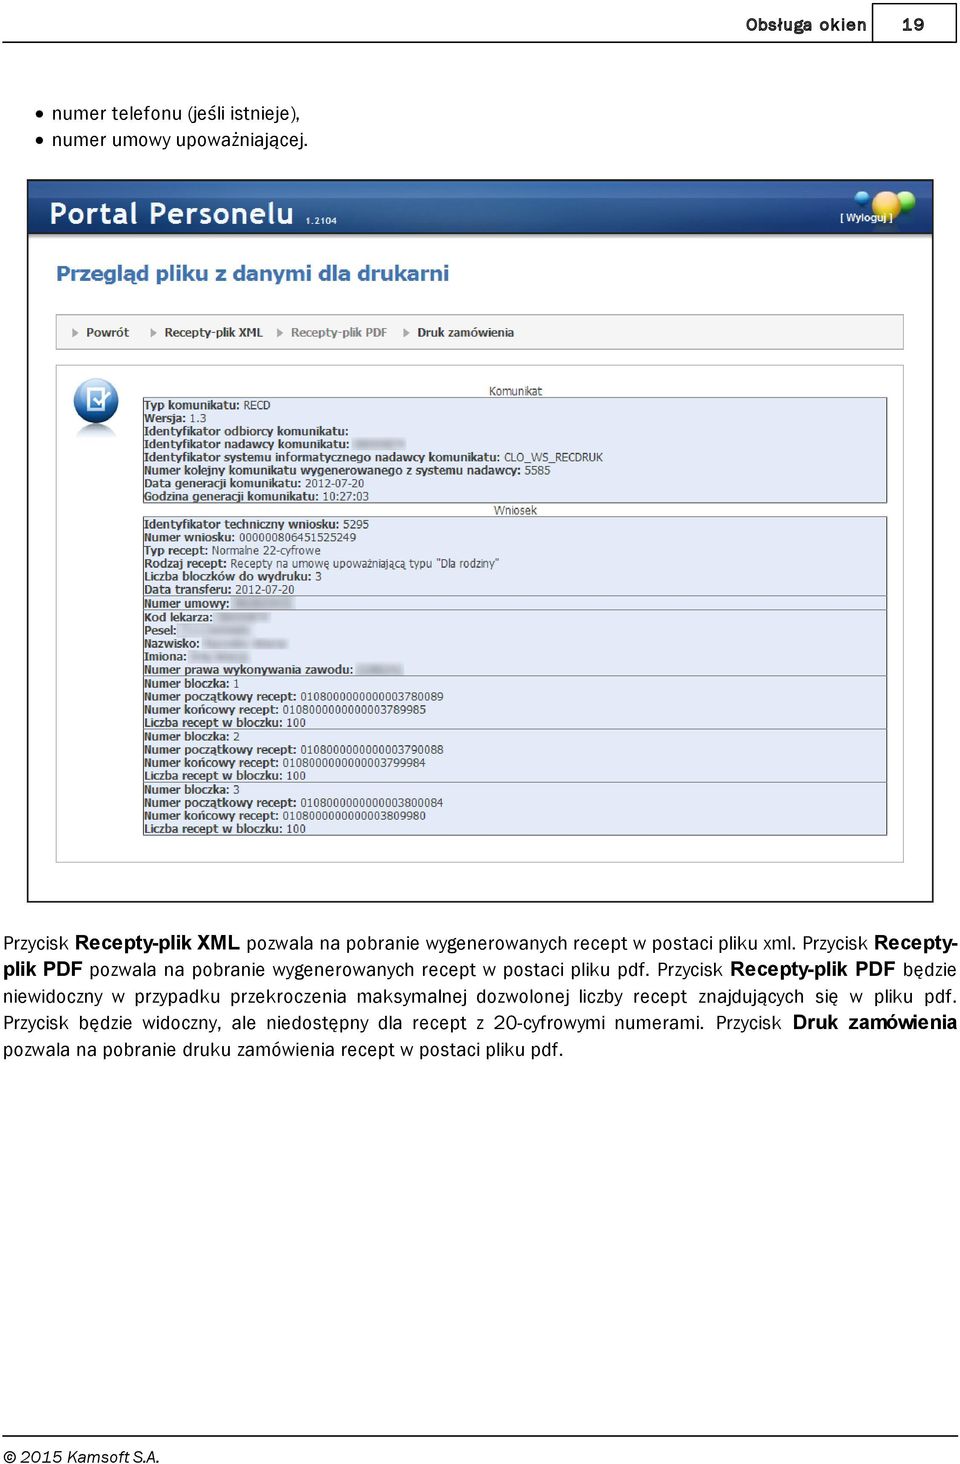 Przycisk Receptyplik PDF pozwala na pobranie wygenerowanych recept w postaci pliku pdf.